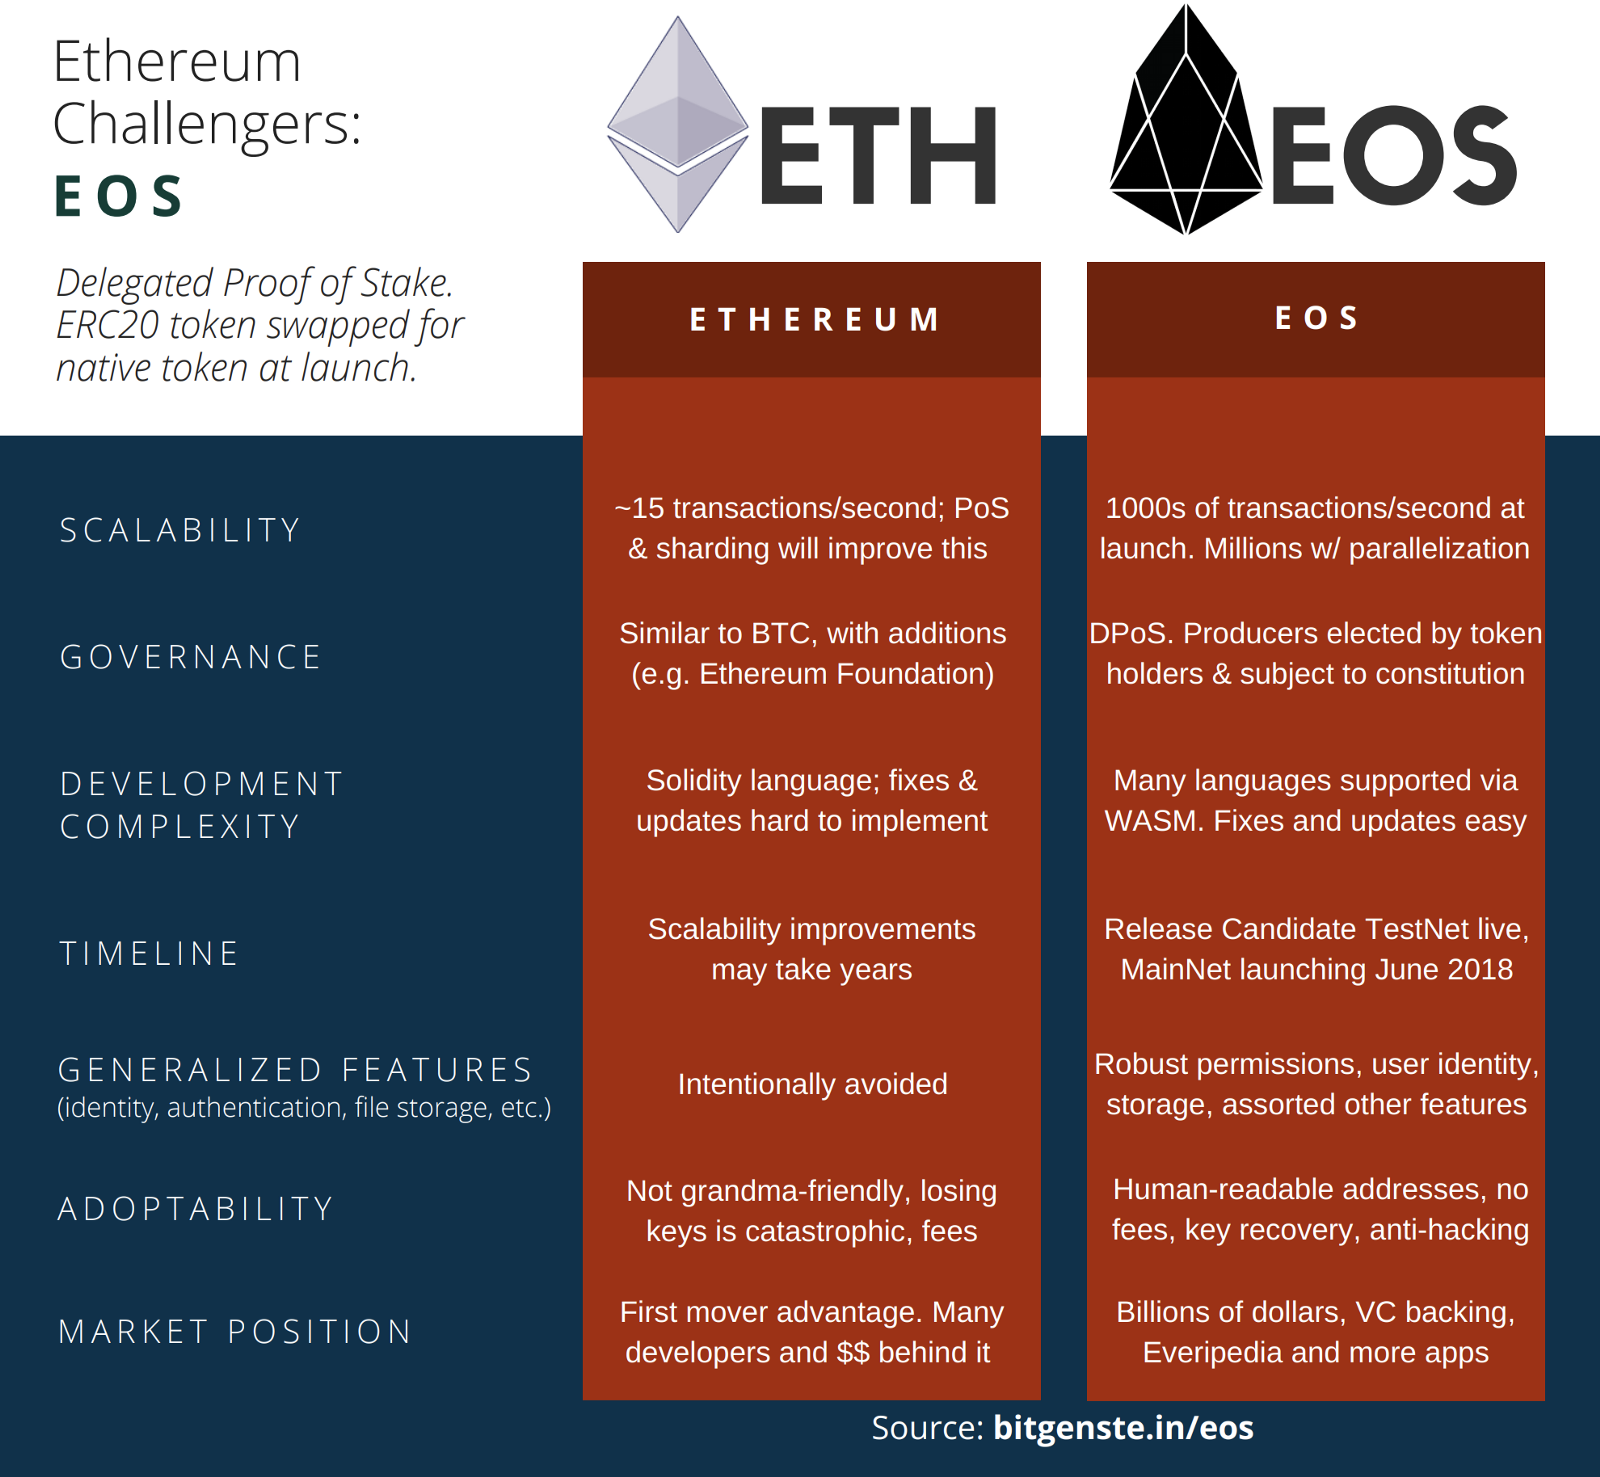 The Complete Guide to understanding EOS Blockchain | LeewayHertz